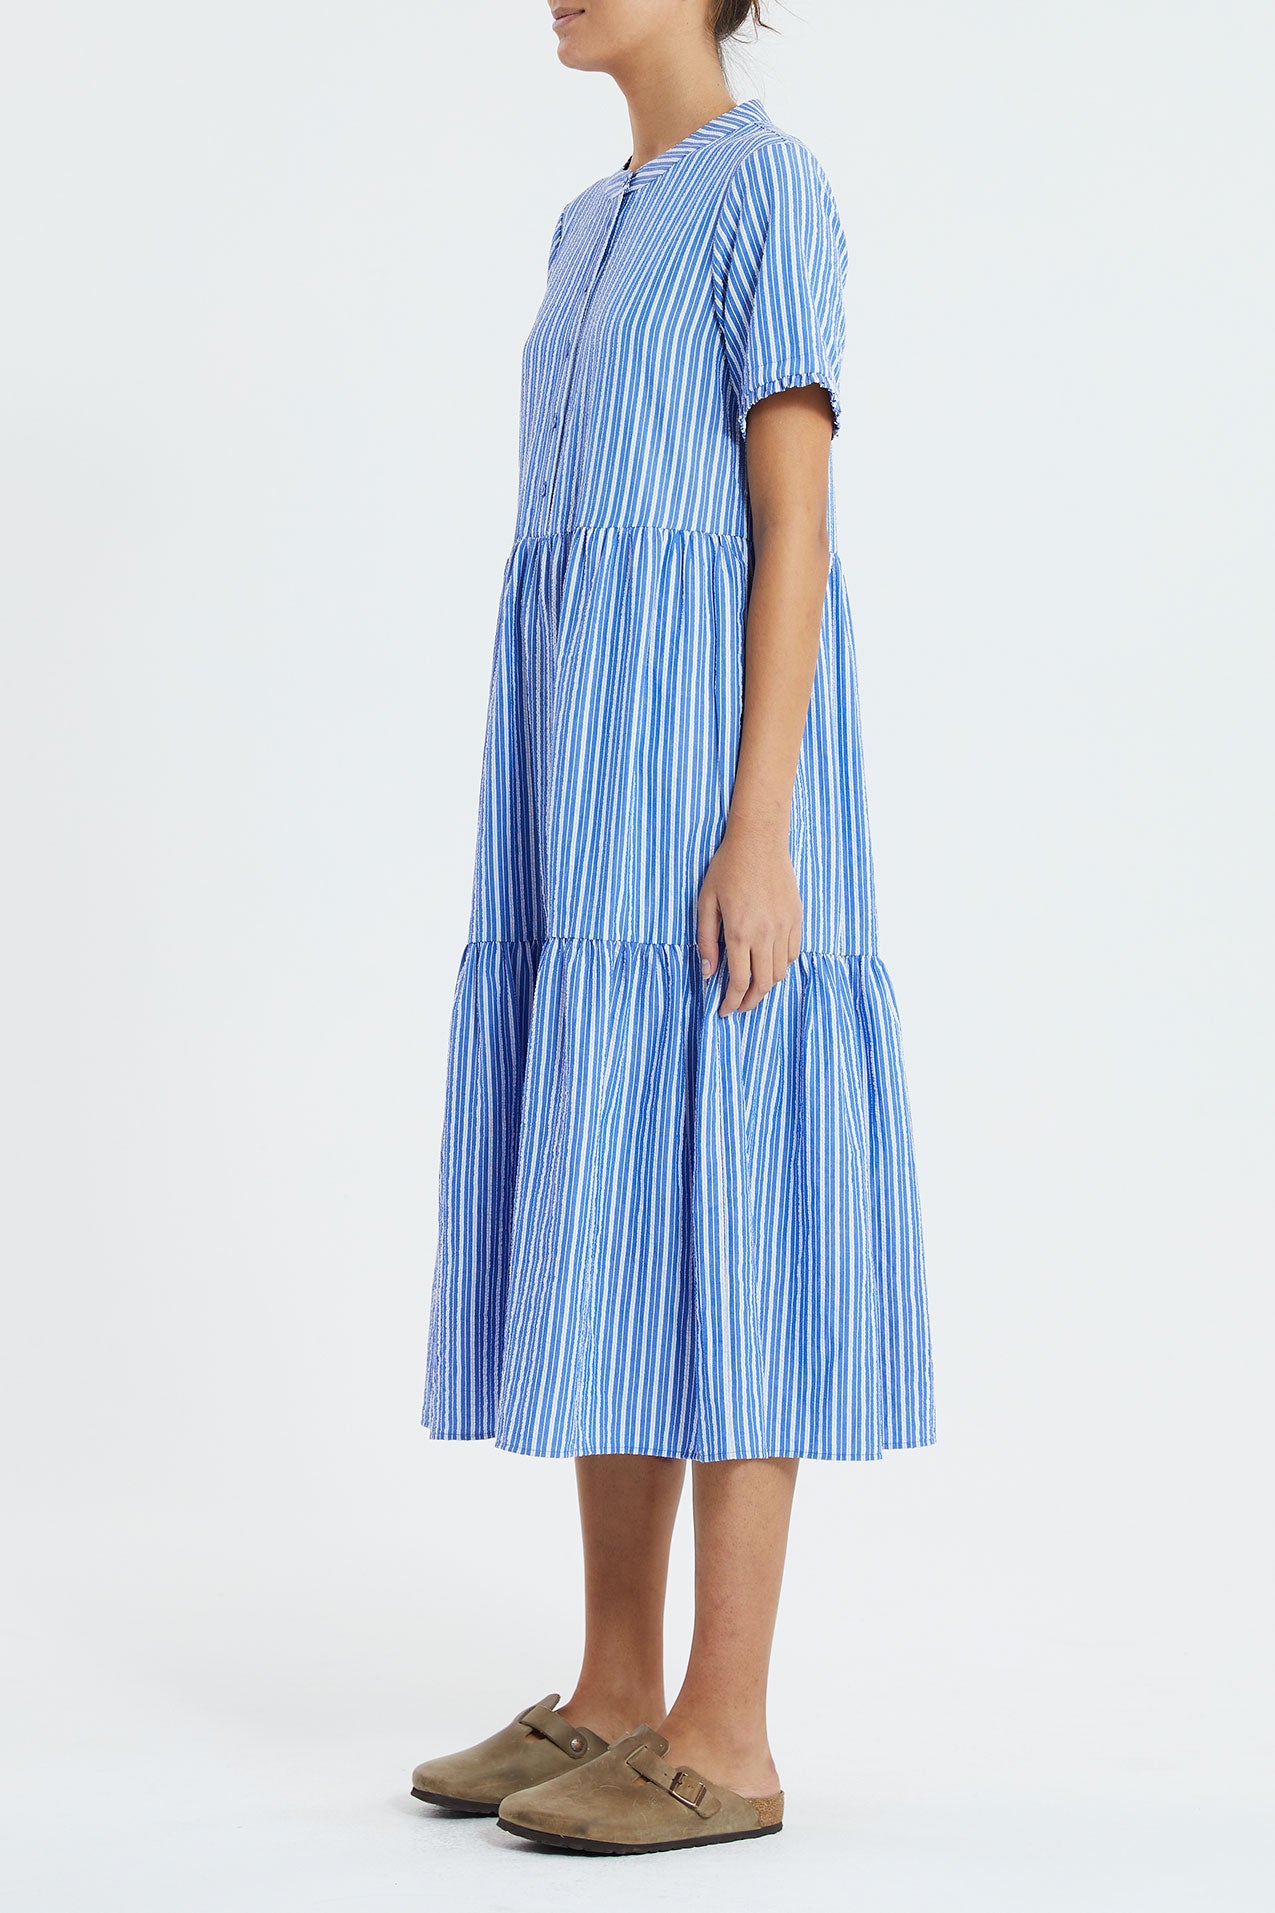 Lollys Laundry Fie Dress - Blue Stripe